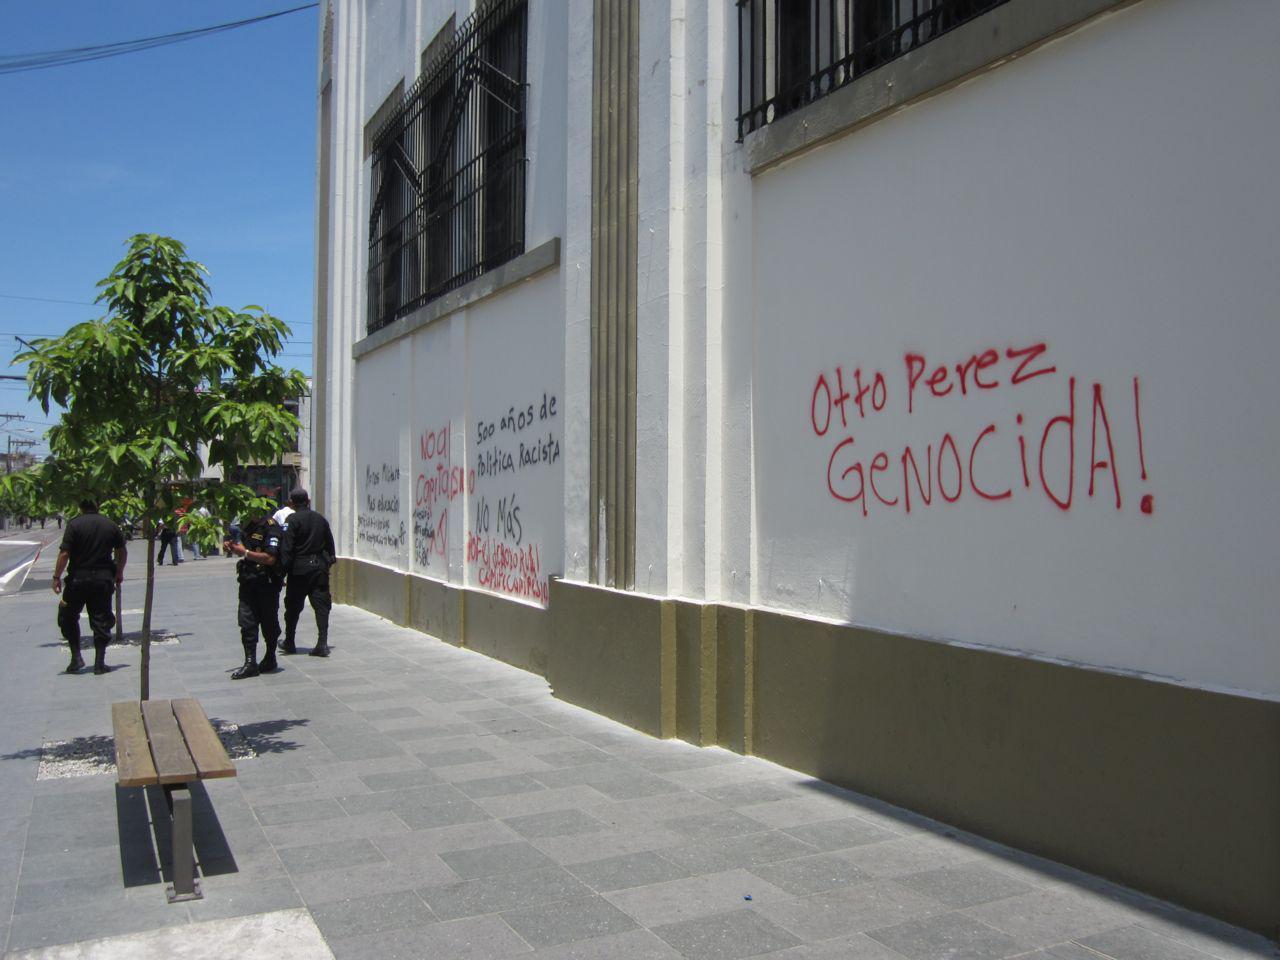 Grafittis en un muro de la Sexta Avenida de Ciudad de Guatemala, después de una Marcha indígena y campesina, el 27 de marzo de 2012. En ellos se acusa al general Otto Pérez Molina, en ese momento presidente de la República, de haber participado en el genocidio ixil, en Quiché, a inicios de los años 80.